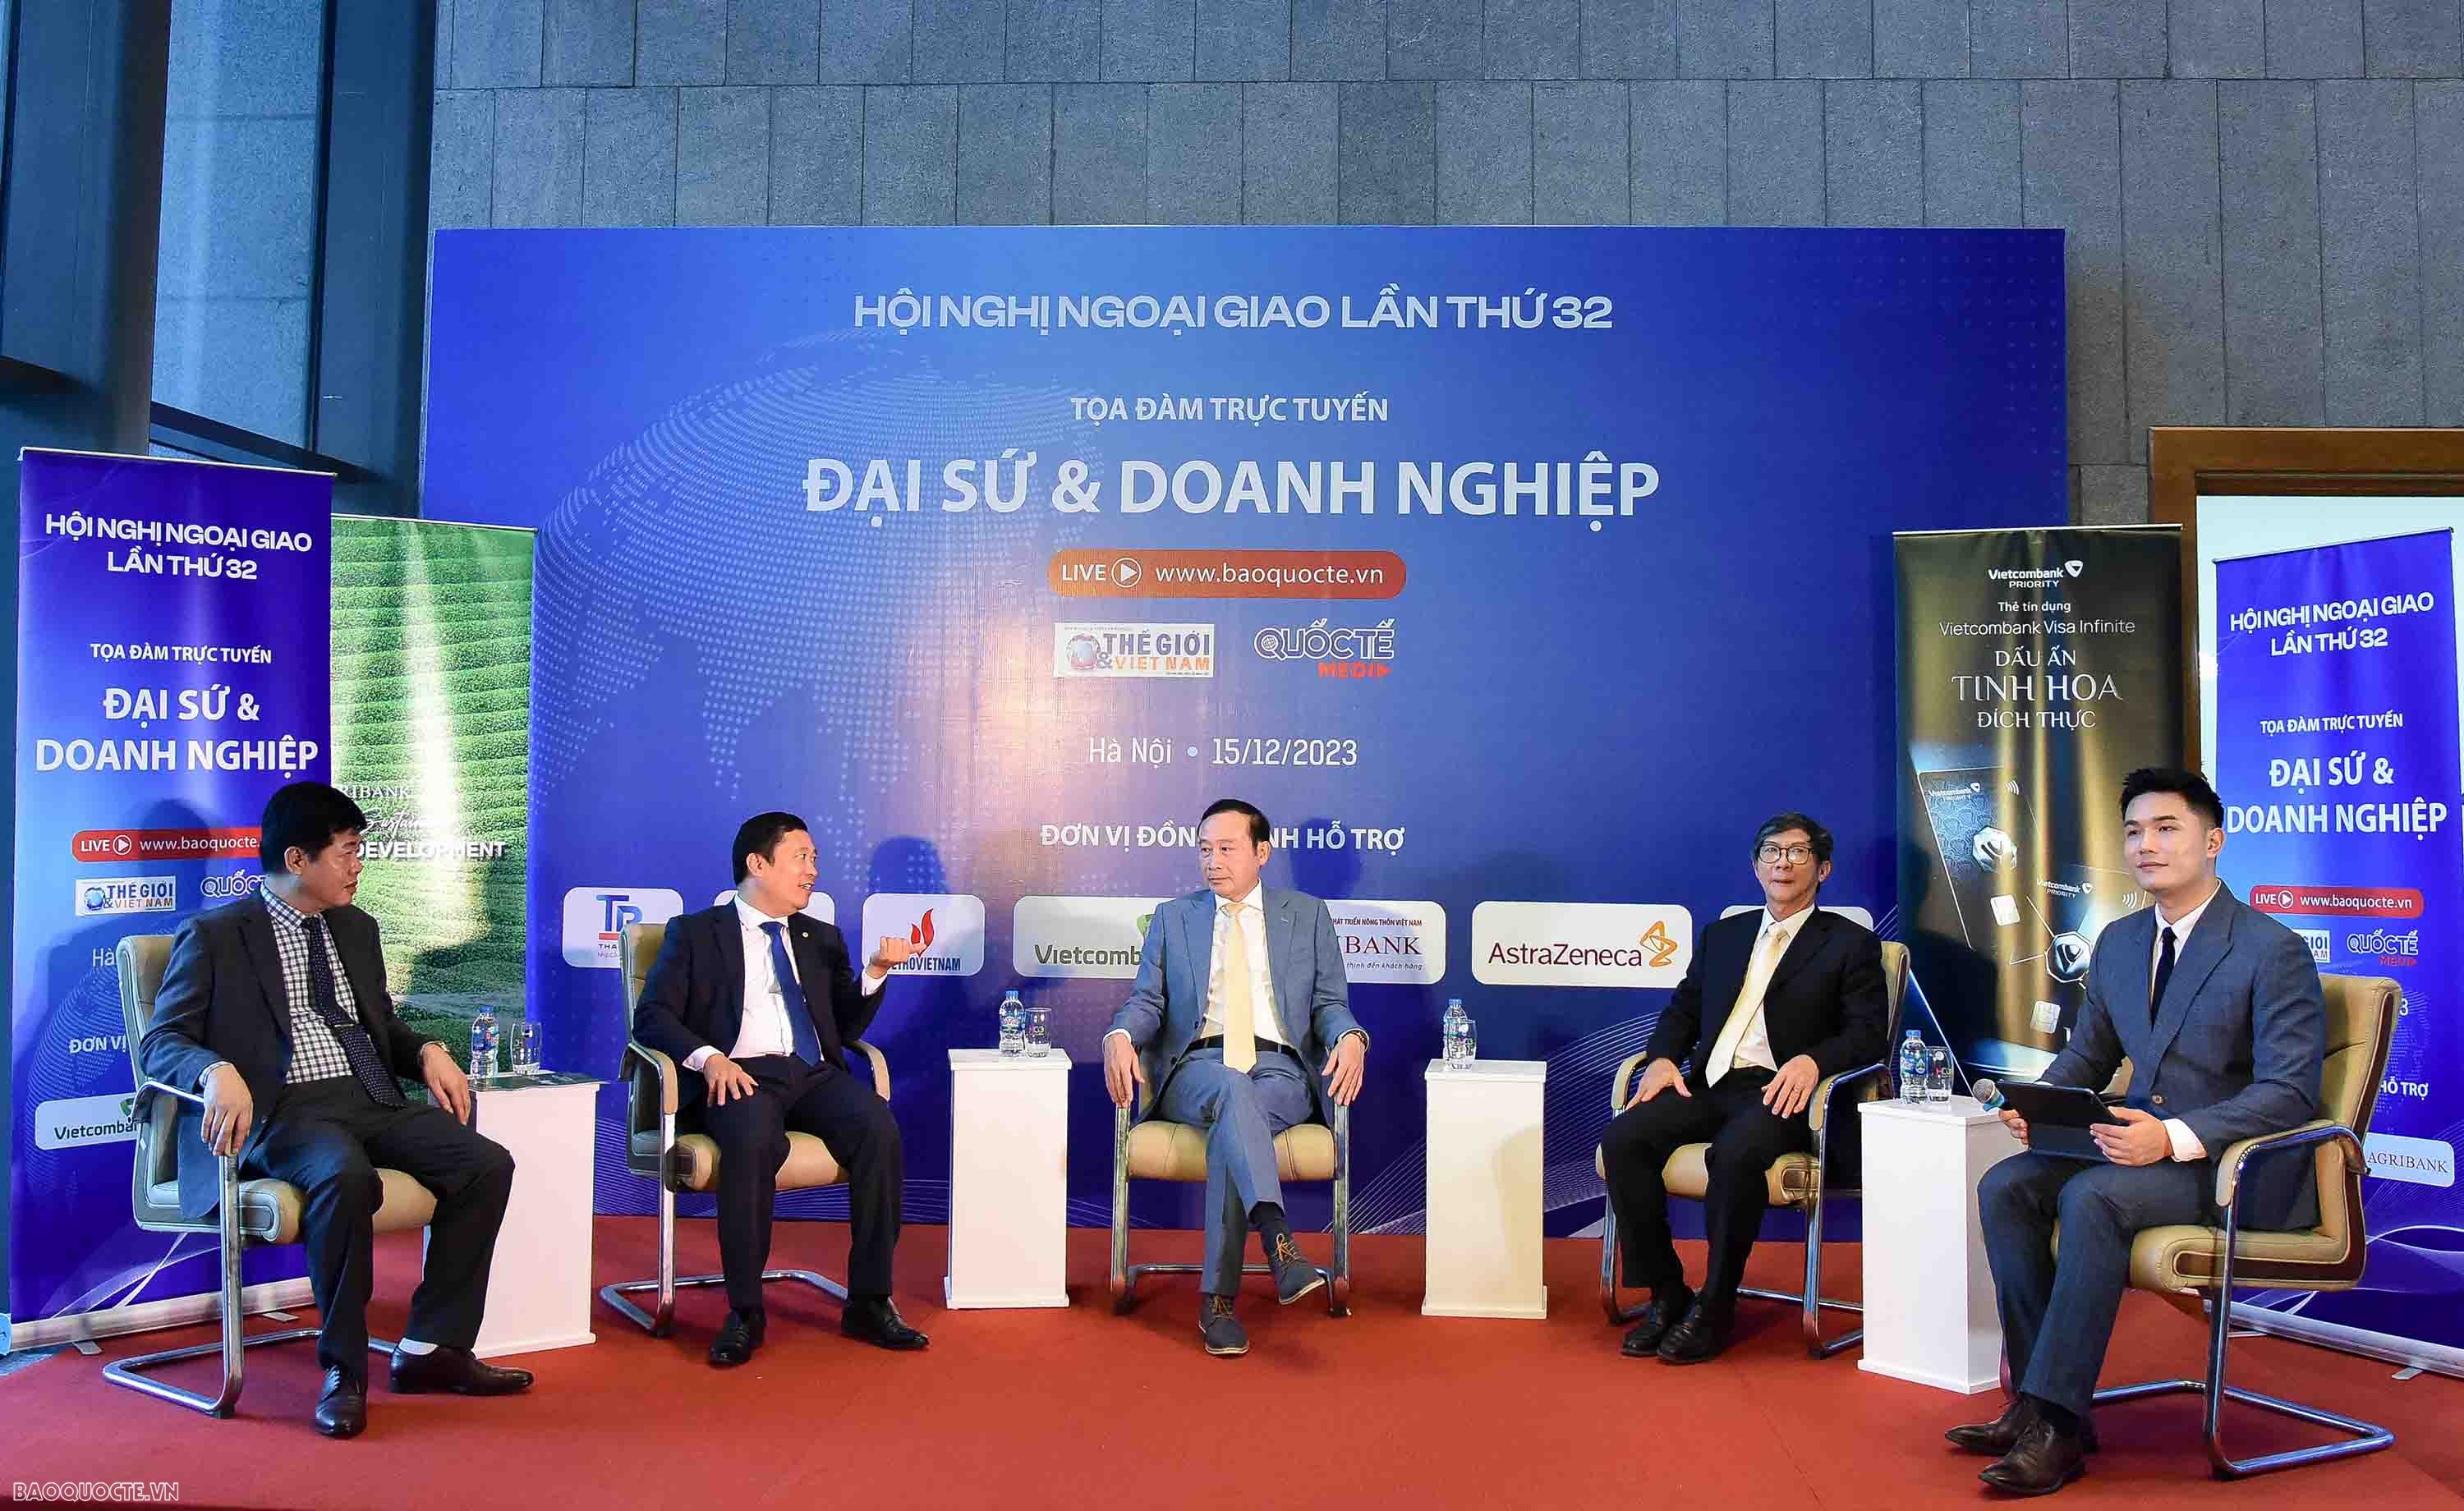 Press Corner: Cơ hội và thách thức mới đối với doanh nghiệp Việt Nam trong xuất khẩu hàng hóa ra nước ngoài